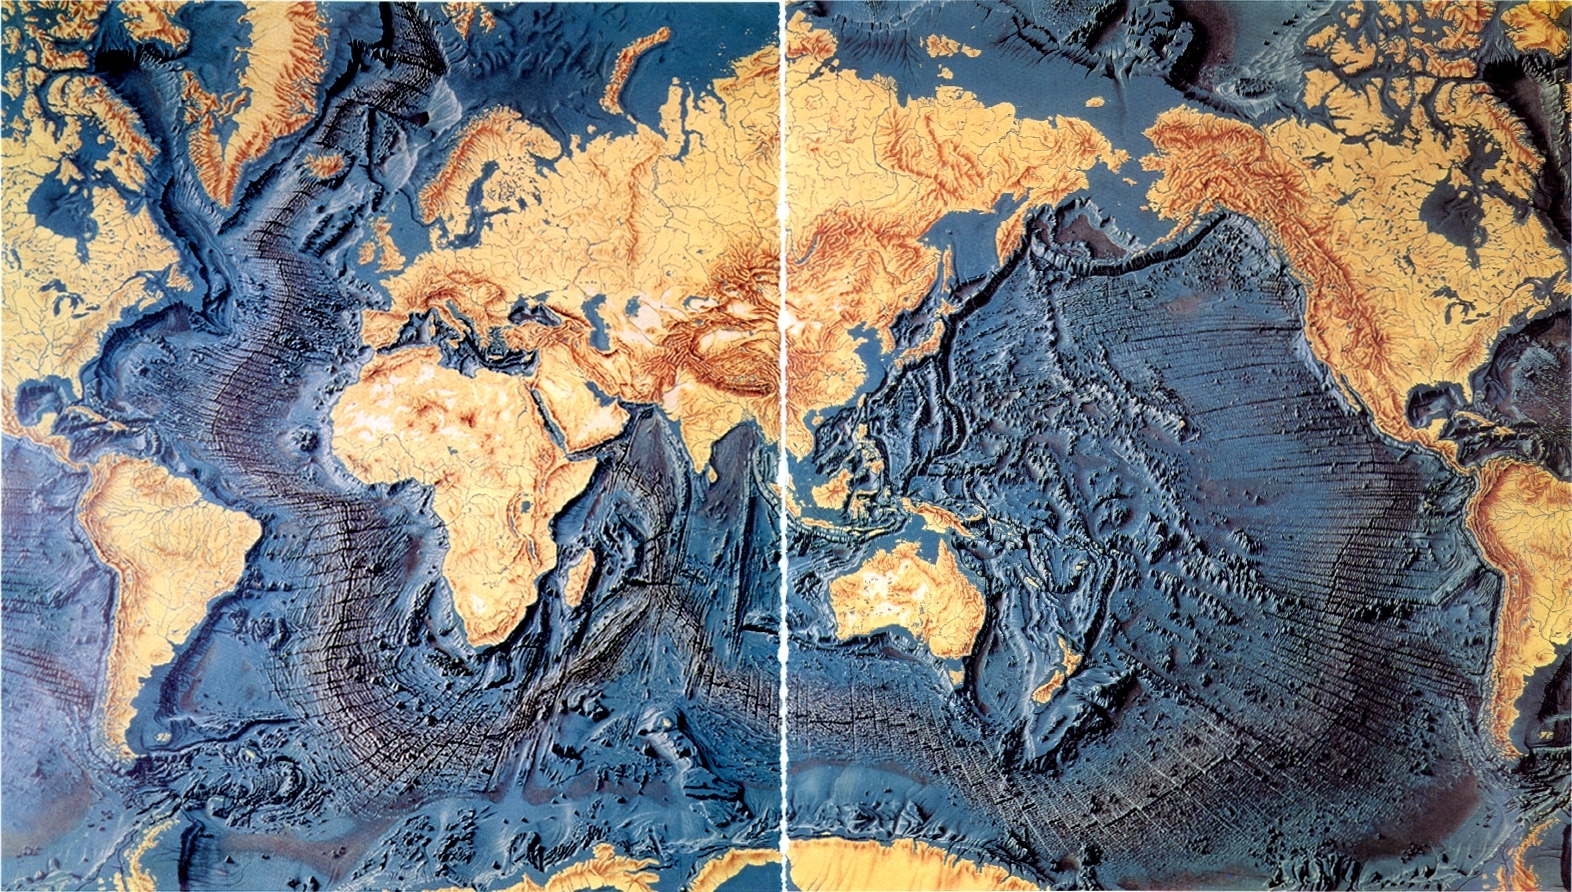 太平洋与大西洋为何存在海拔差？_巴拿马运河